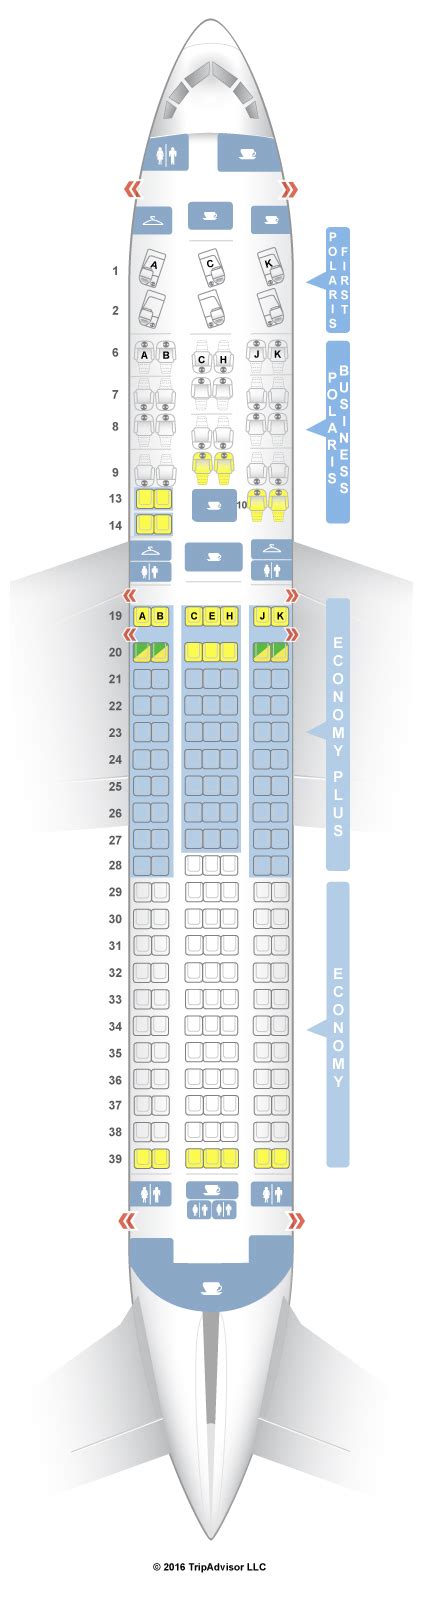 boeing 767-300er seat map